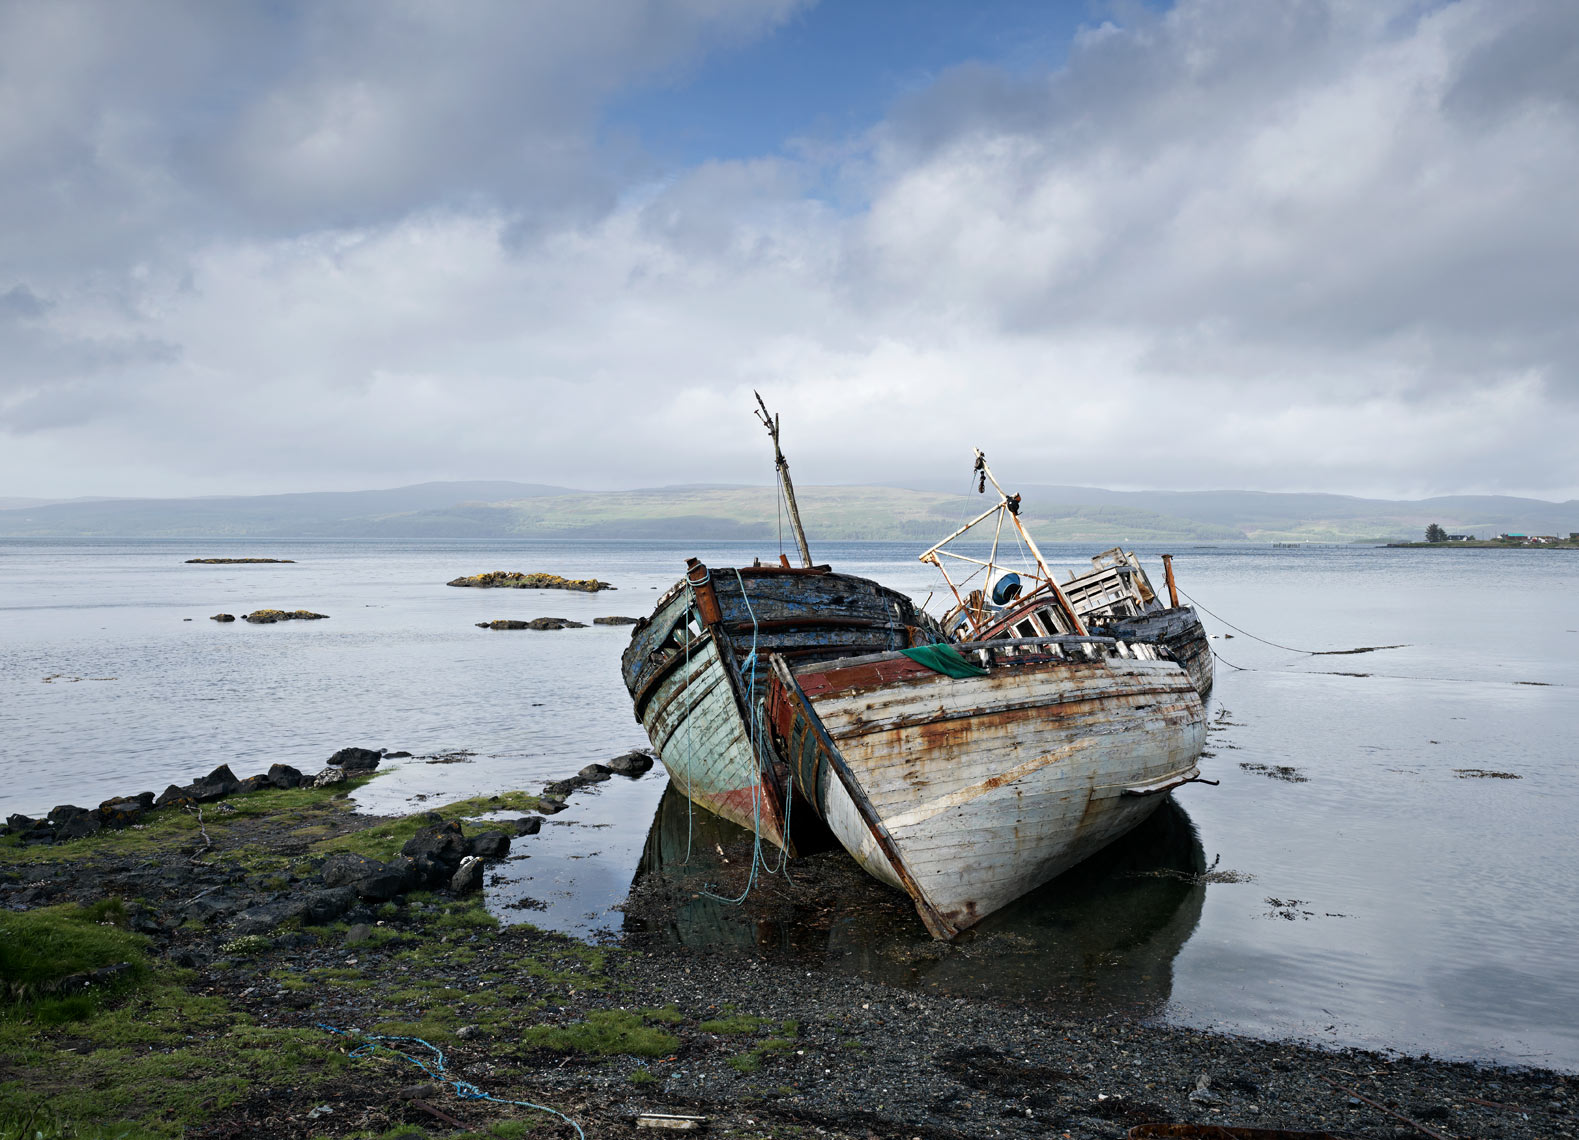 Salen-Bay-shipwrecks_print